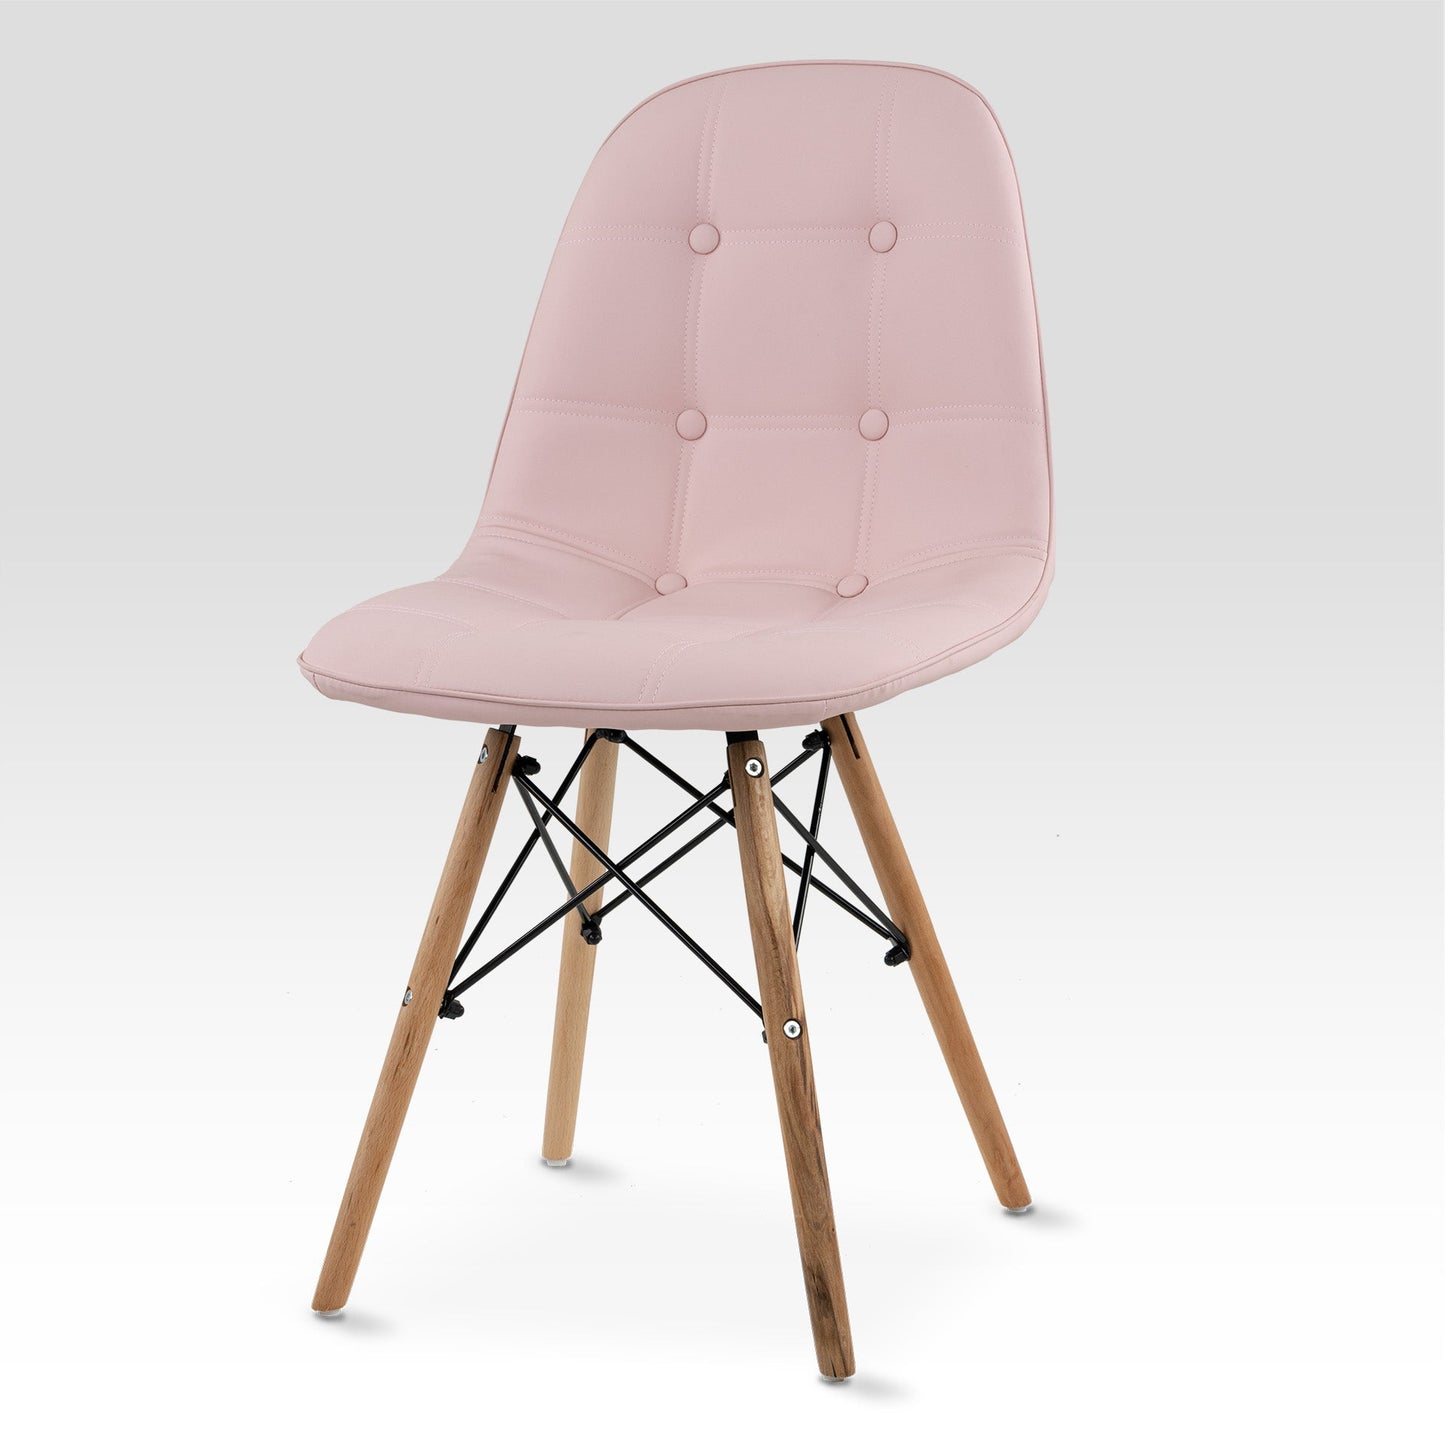 Visualización de un costado de la silla shell con botones de color rosa. Silla Moderna Eames con Botones Elegante y Vanguardista | Silla de Comedor, Oficina, Sala de Estar Estilo Minimalista | Varios Colores (Rosa) 